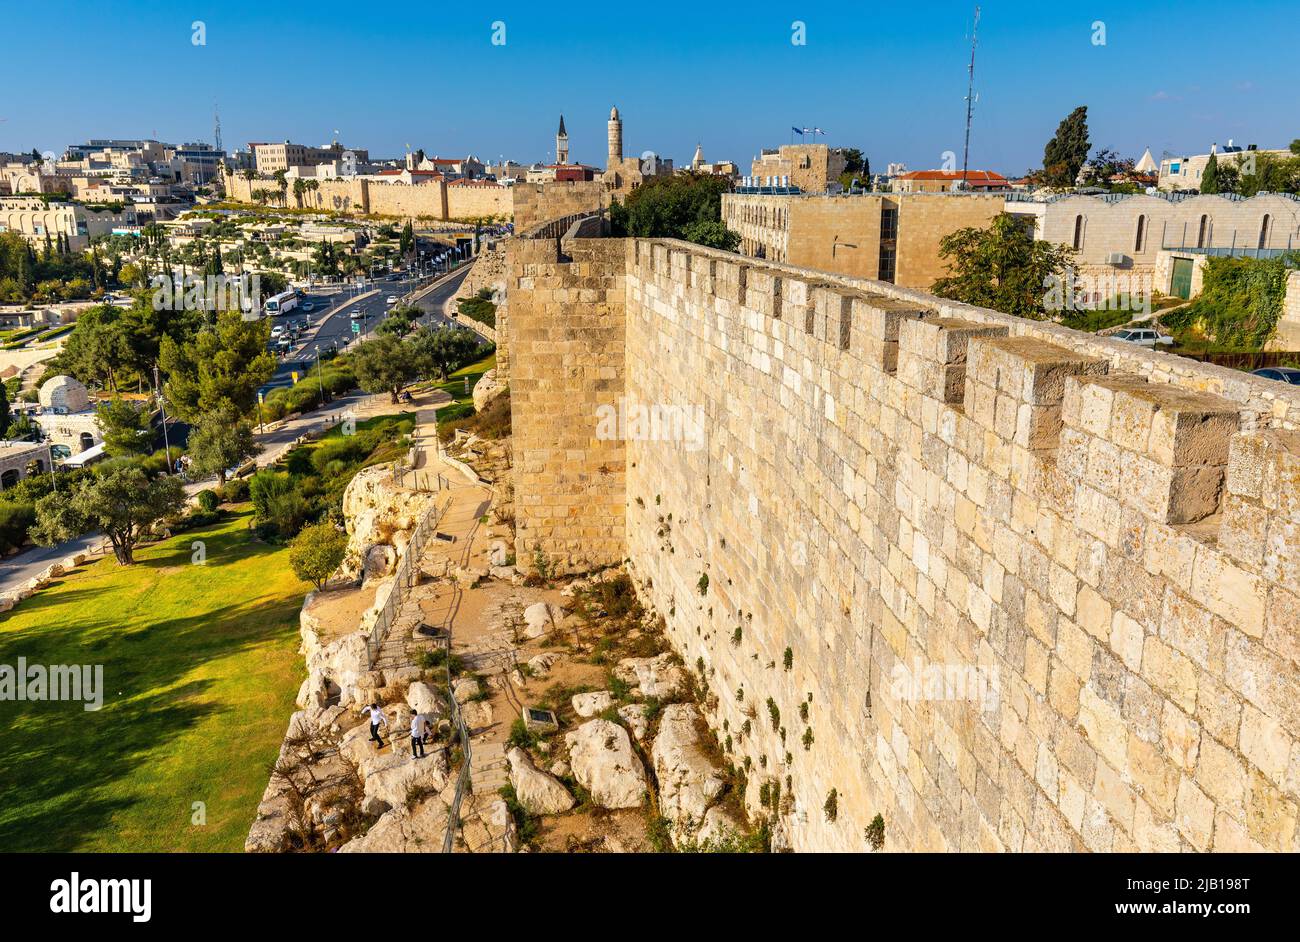 Jerusalem, Israel - 12. Oktober 2017: Mauern des Turms der Zitadelle von David und der Altstadt über dem Jaffa-Tor und der Hativat Yerushalayim-Straße mit Mamilla-Viertel Stockfoto